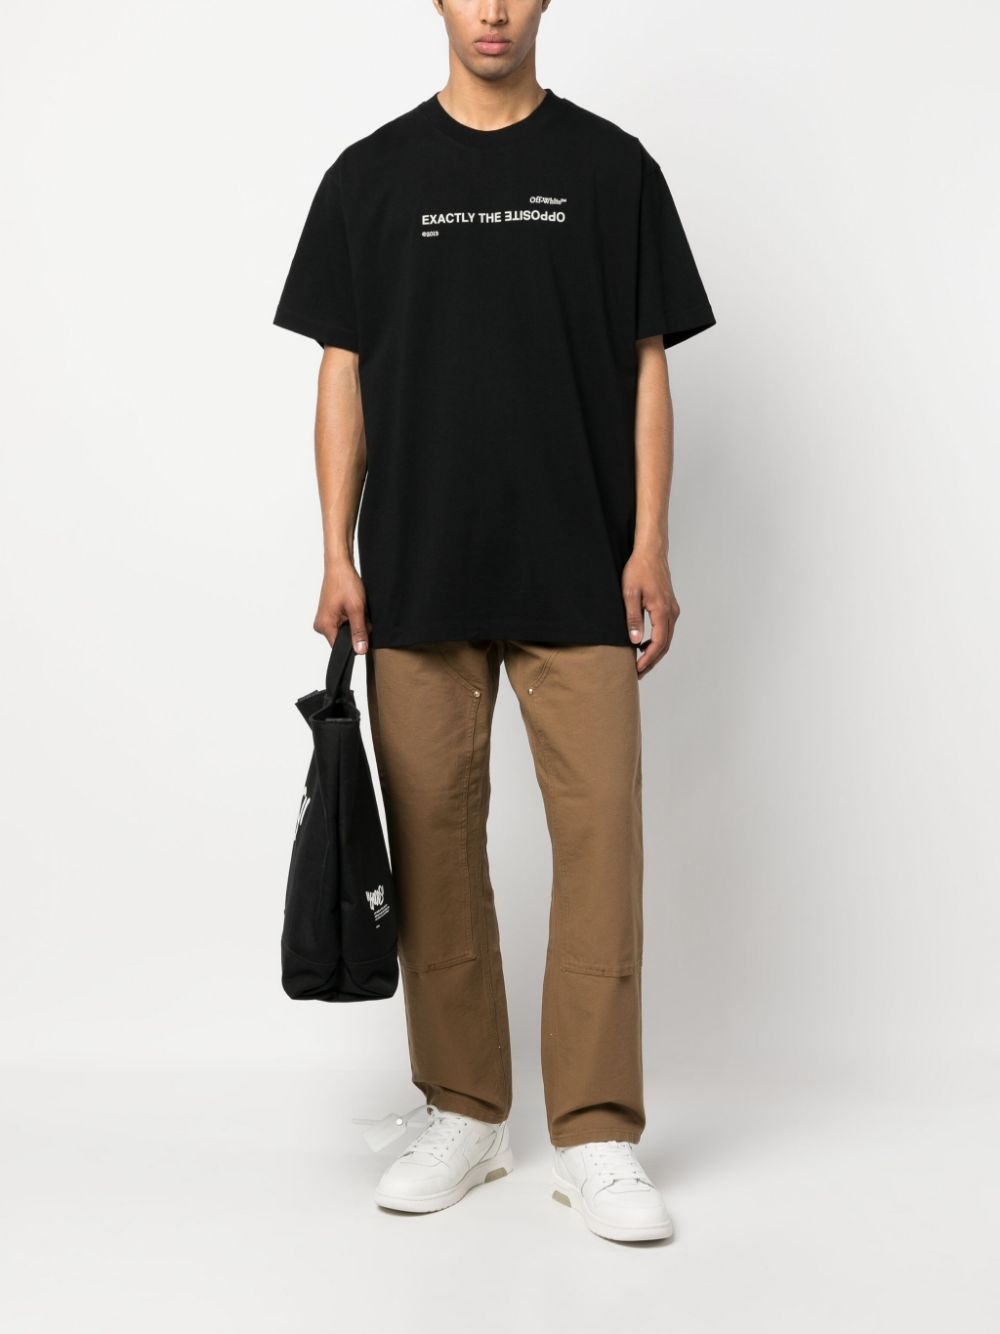 Off-White | Men Exact Opposite Skate Cotton T-Shirt Black S